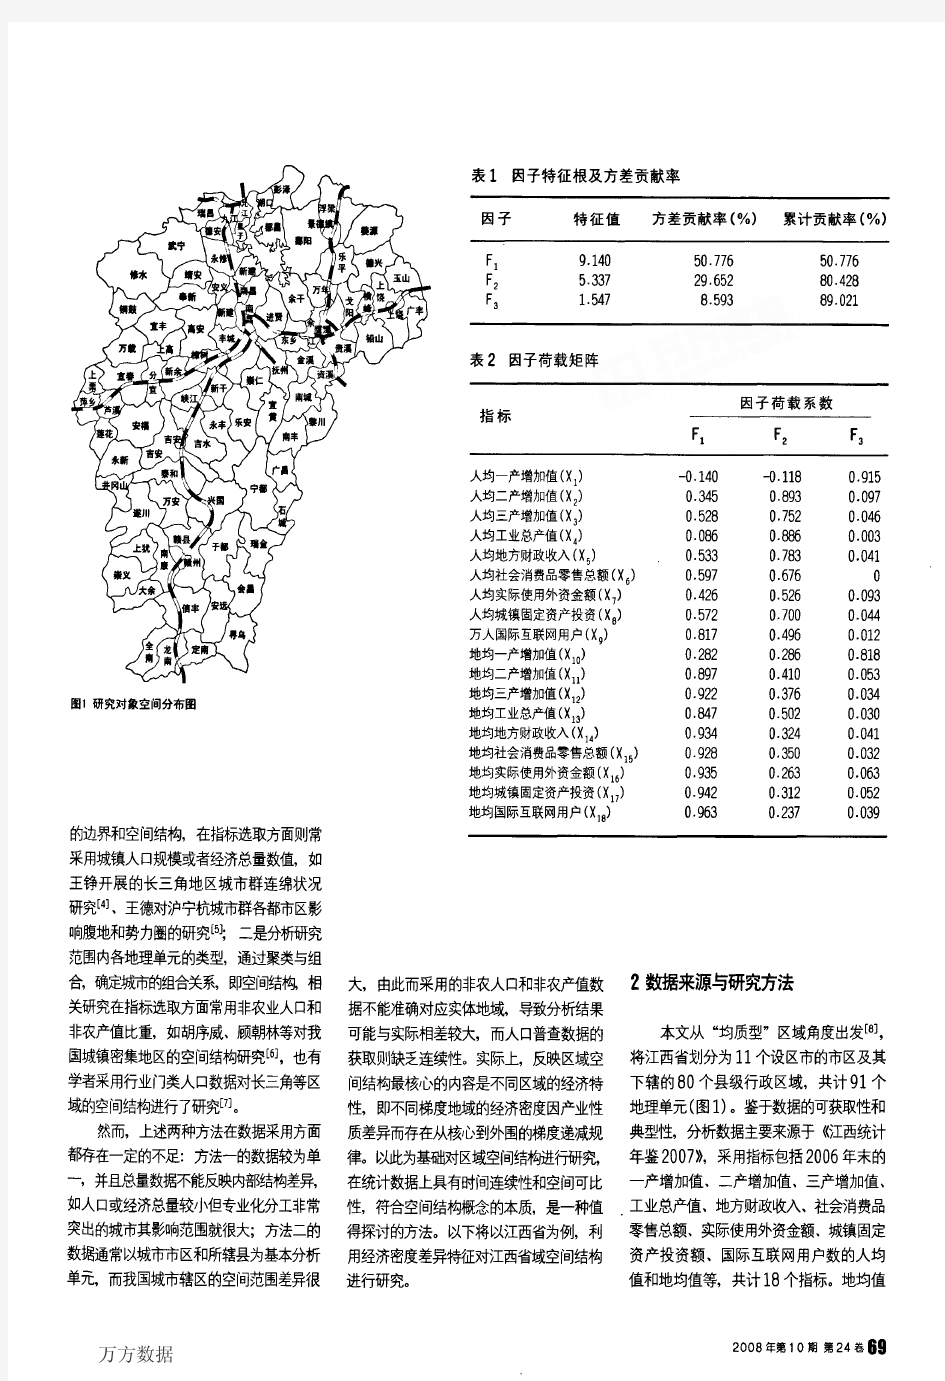 基于经济密度差异特征的区域空间结构研究——以江西省为例